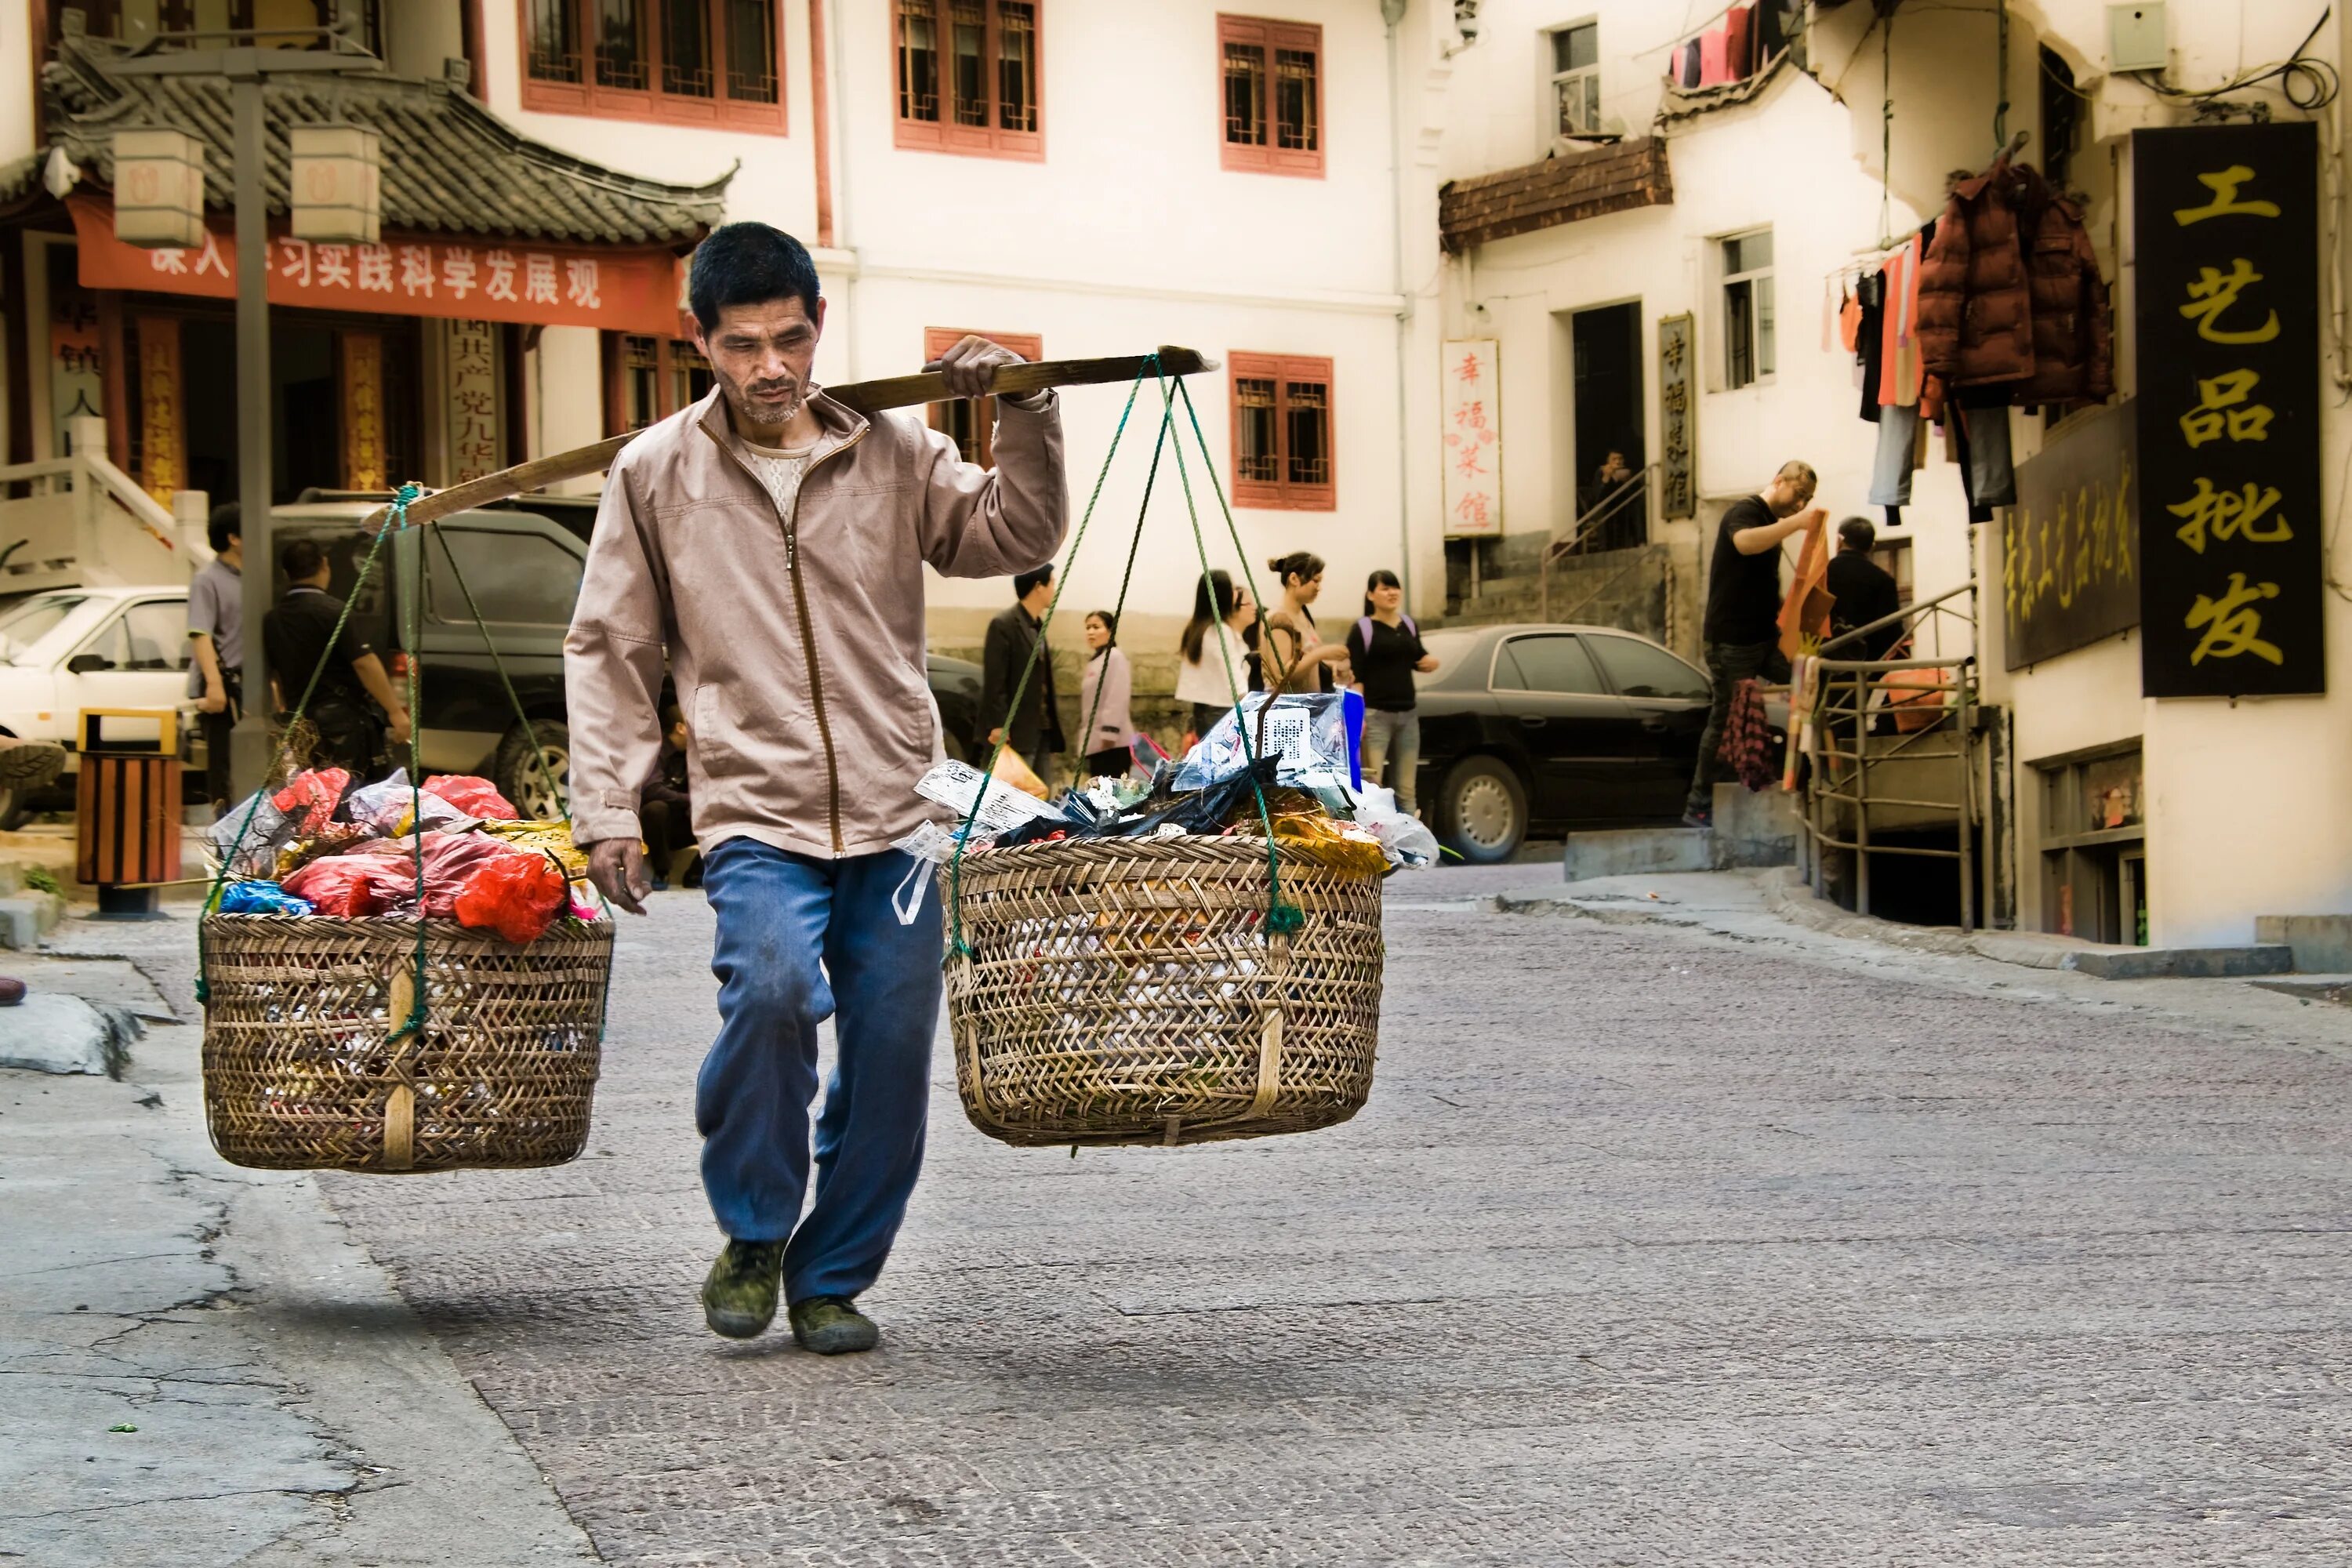 Village работа. Люди на базаре. Люди на рынке. Рынок в китайской деревне.